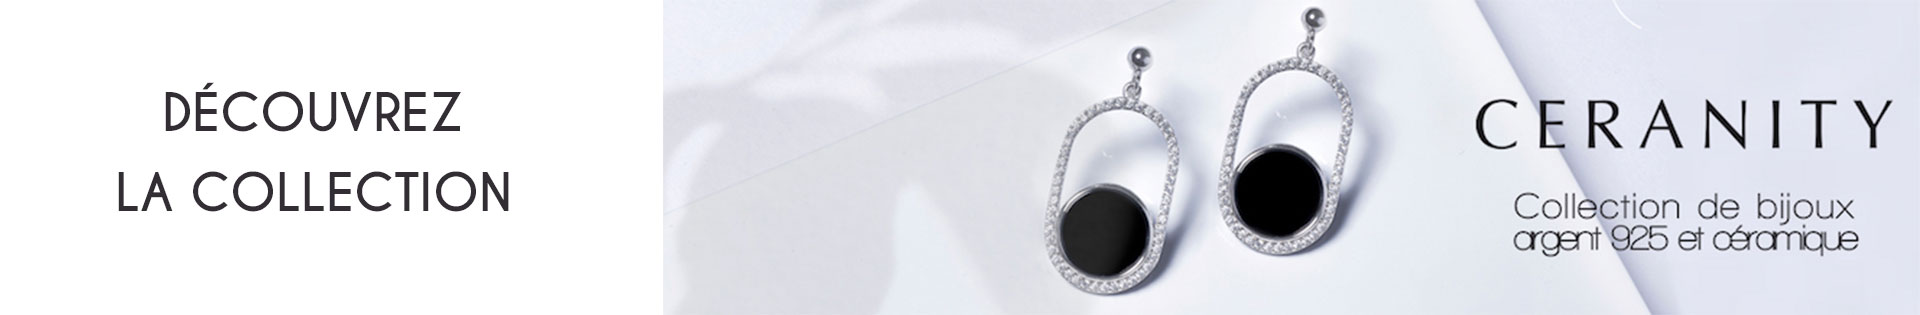 Marques de bijoux - Ceranity Silver - Argent